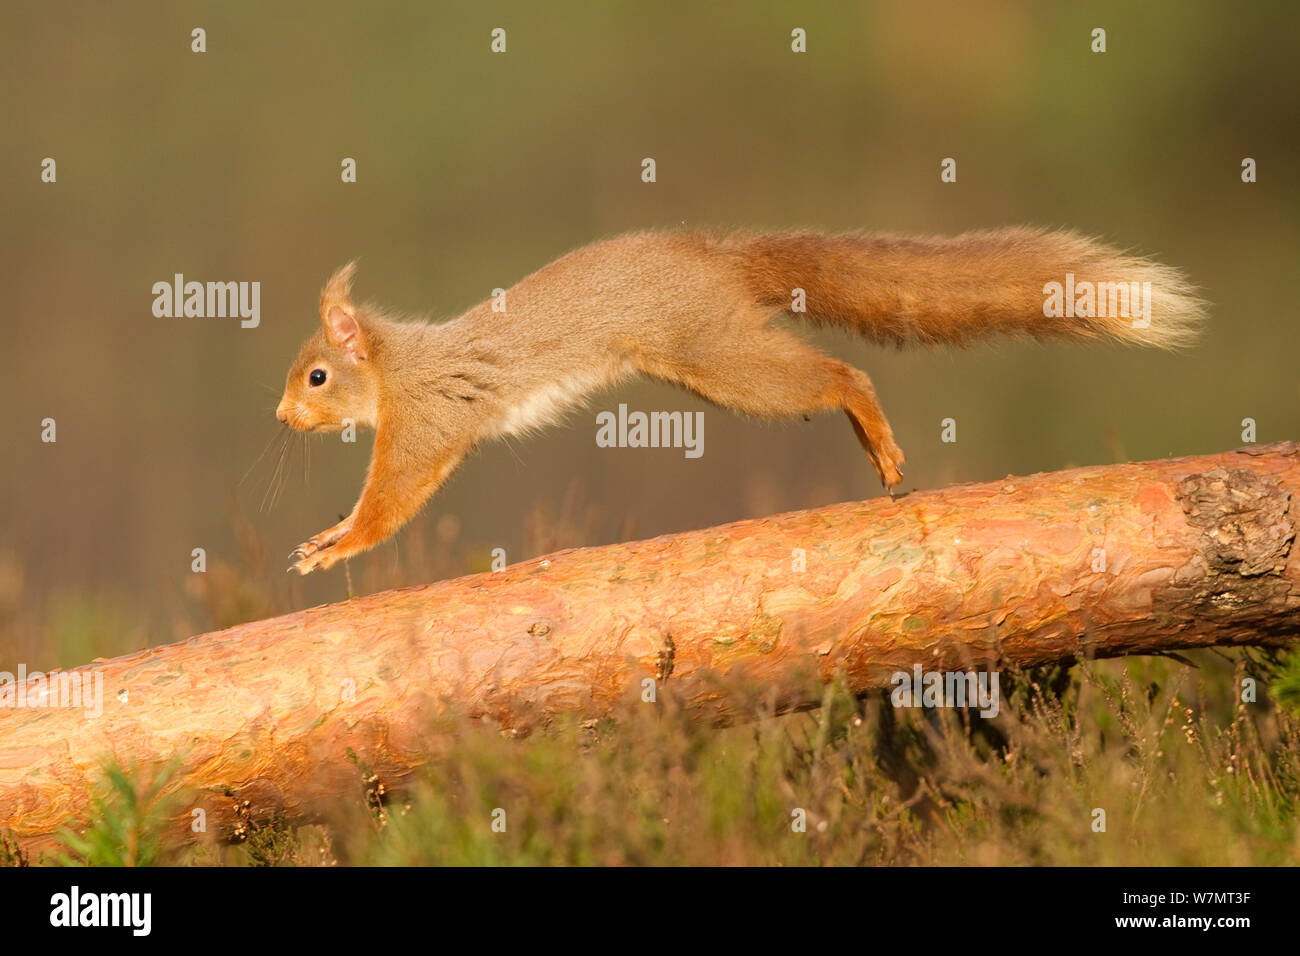 Red scoiattolo (Sciurus vulgaris) che corre lungo il pino silvestre fronda, Cairngorms National Park, Scozia, marzo 2012. Foto Stock